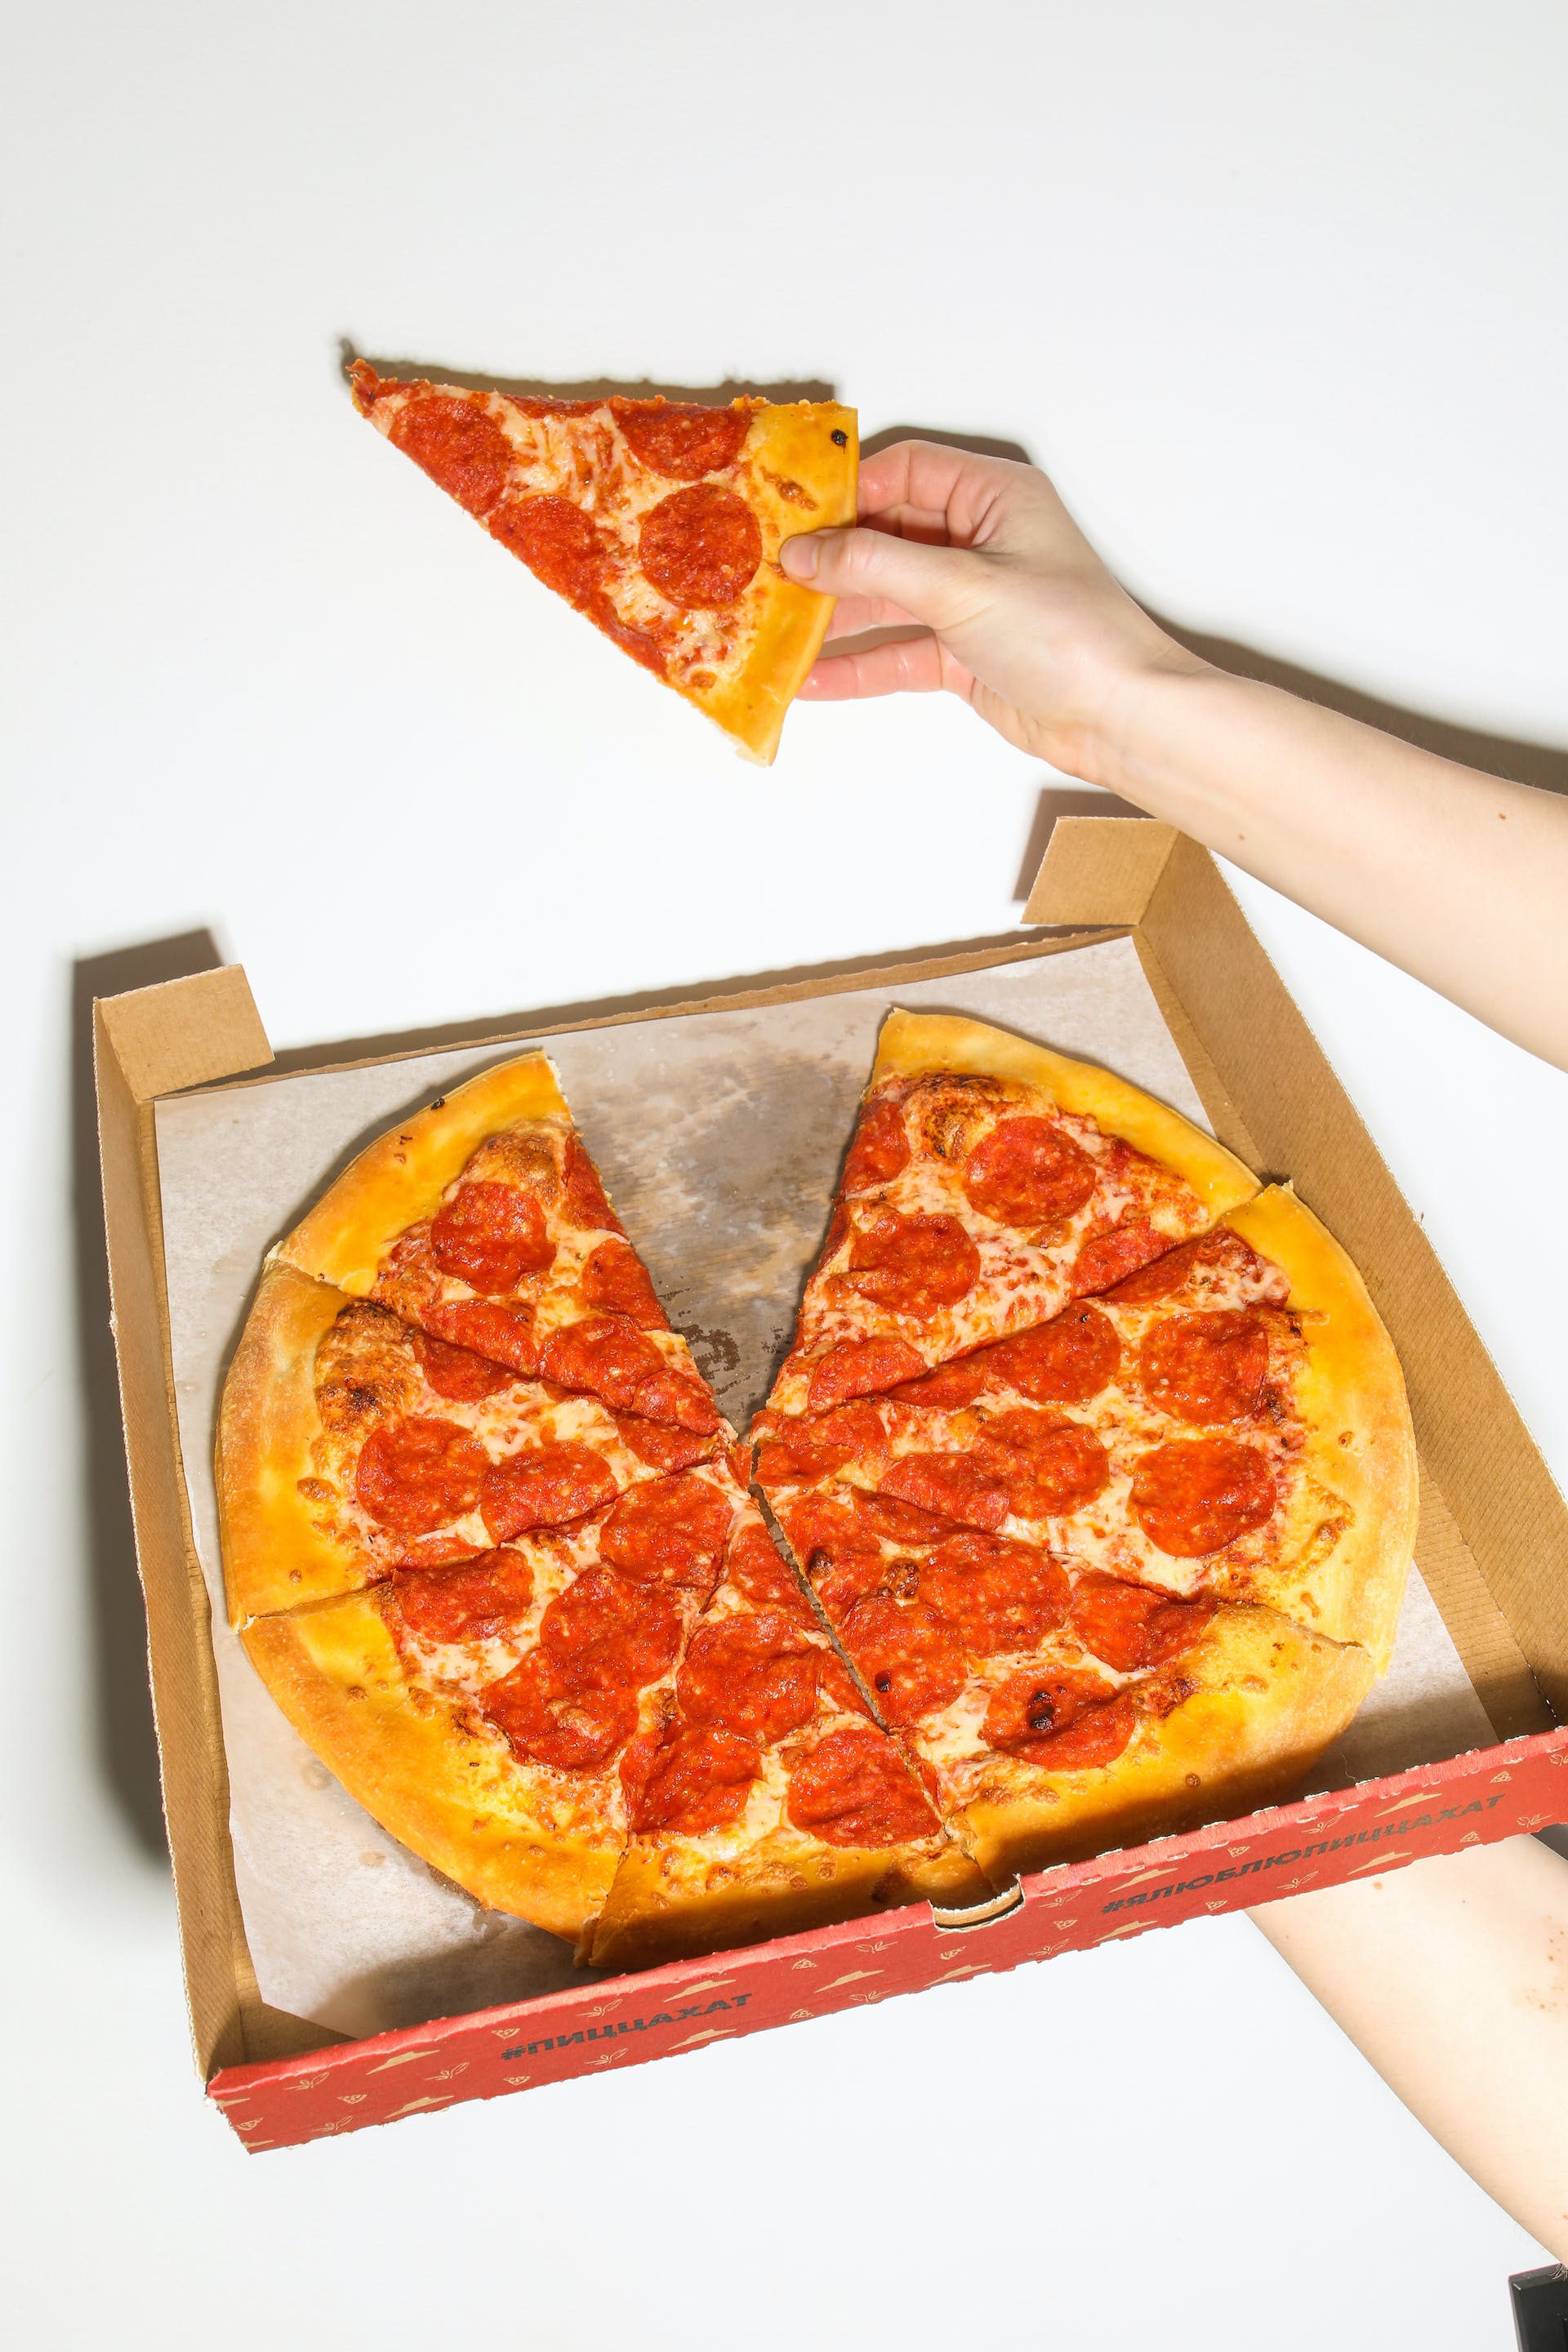 Una persona sujetando una porción de pizza y una caja de pizza | Fuente: Pexels